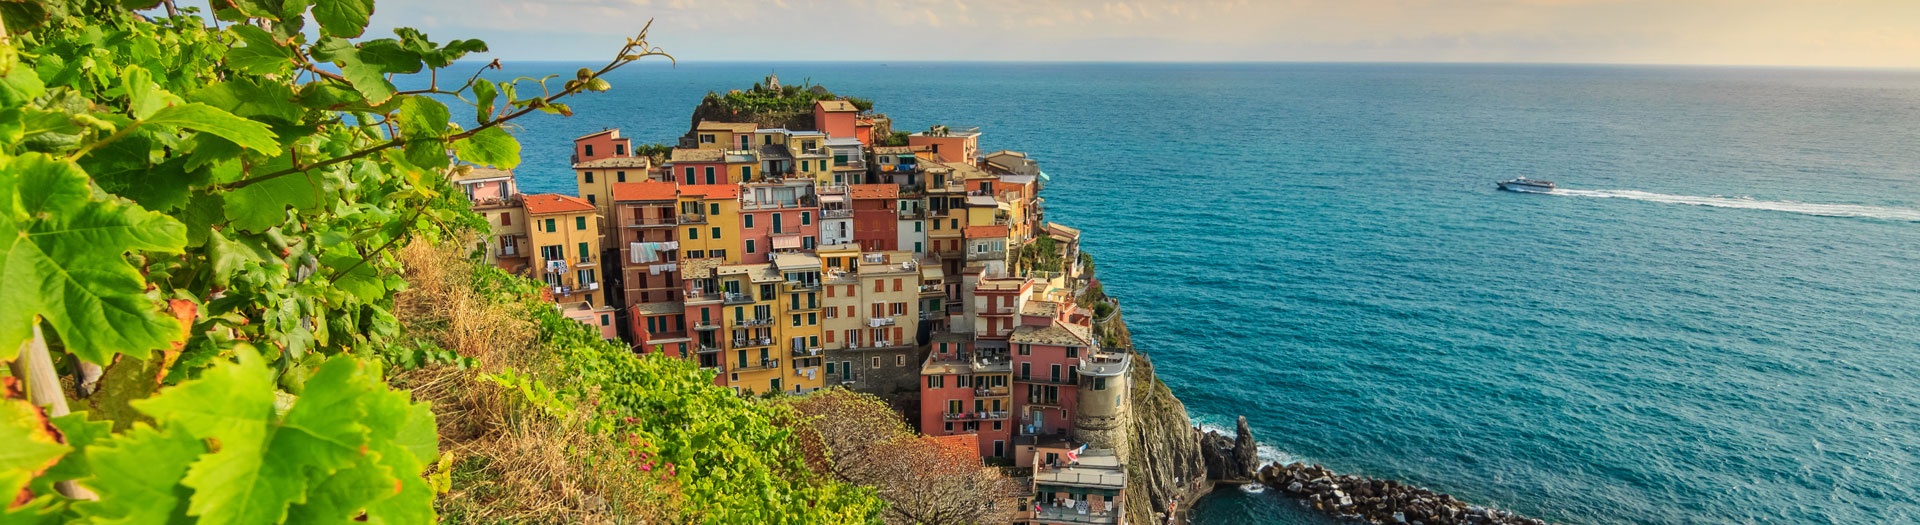 Le Cinque Terre e la Liguria